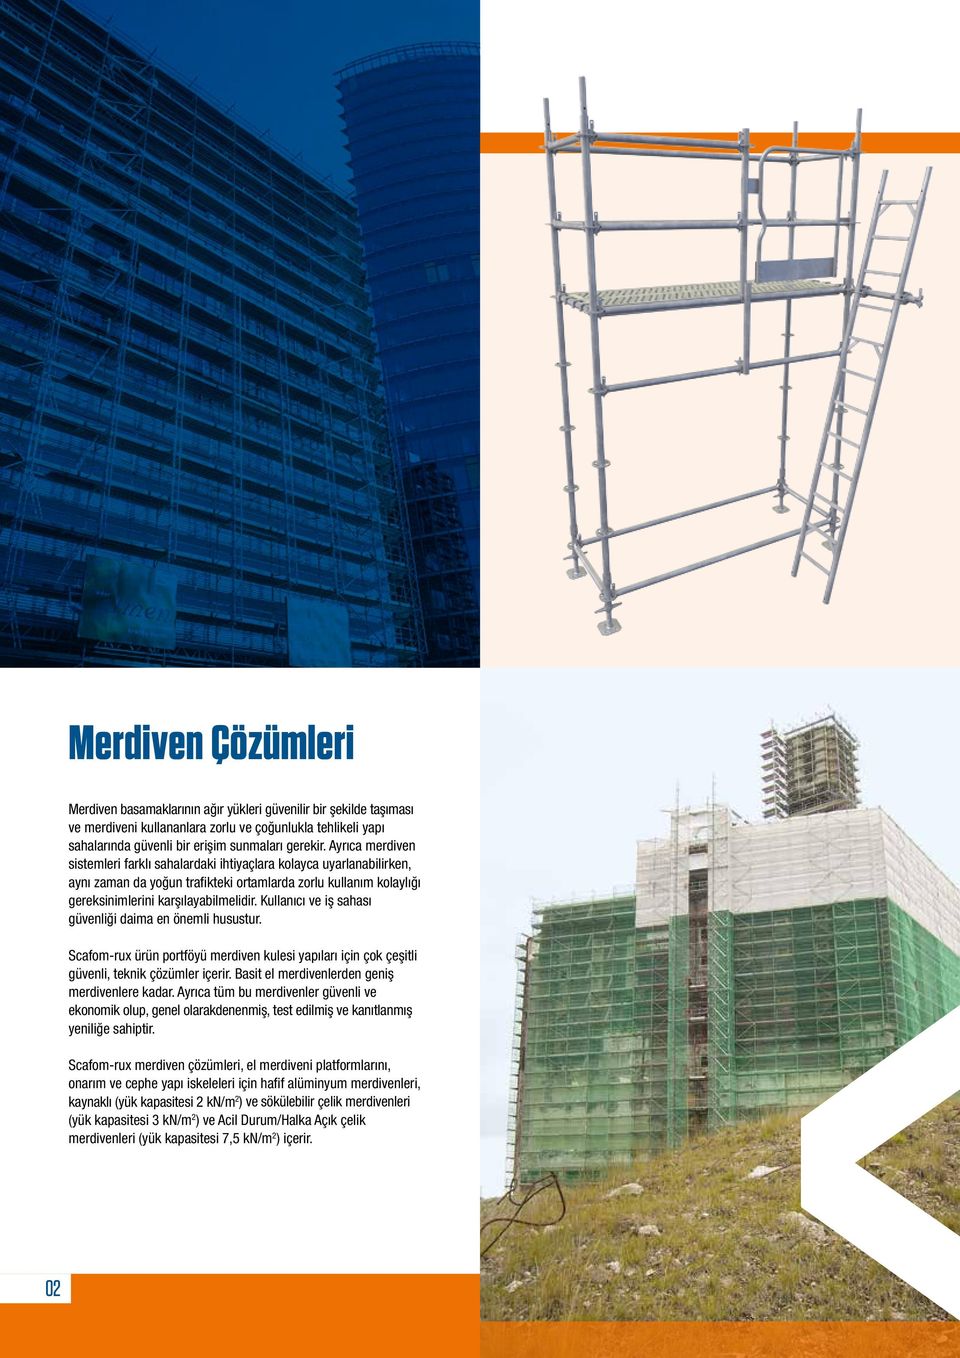 Kullanıcı ve iş sahası güvenliği daima en önemli husustur. Scafom-rux ürün portföyü merdiven kulesi yapıları için çok çeşitli güvenli, teknik çözümler içerir.